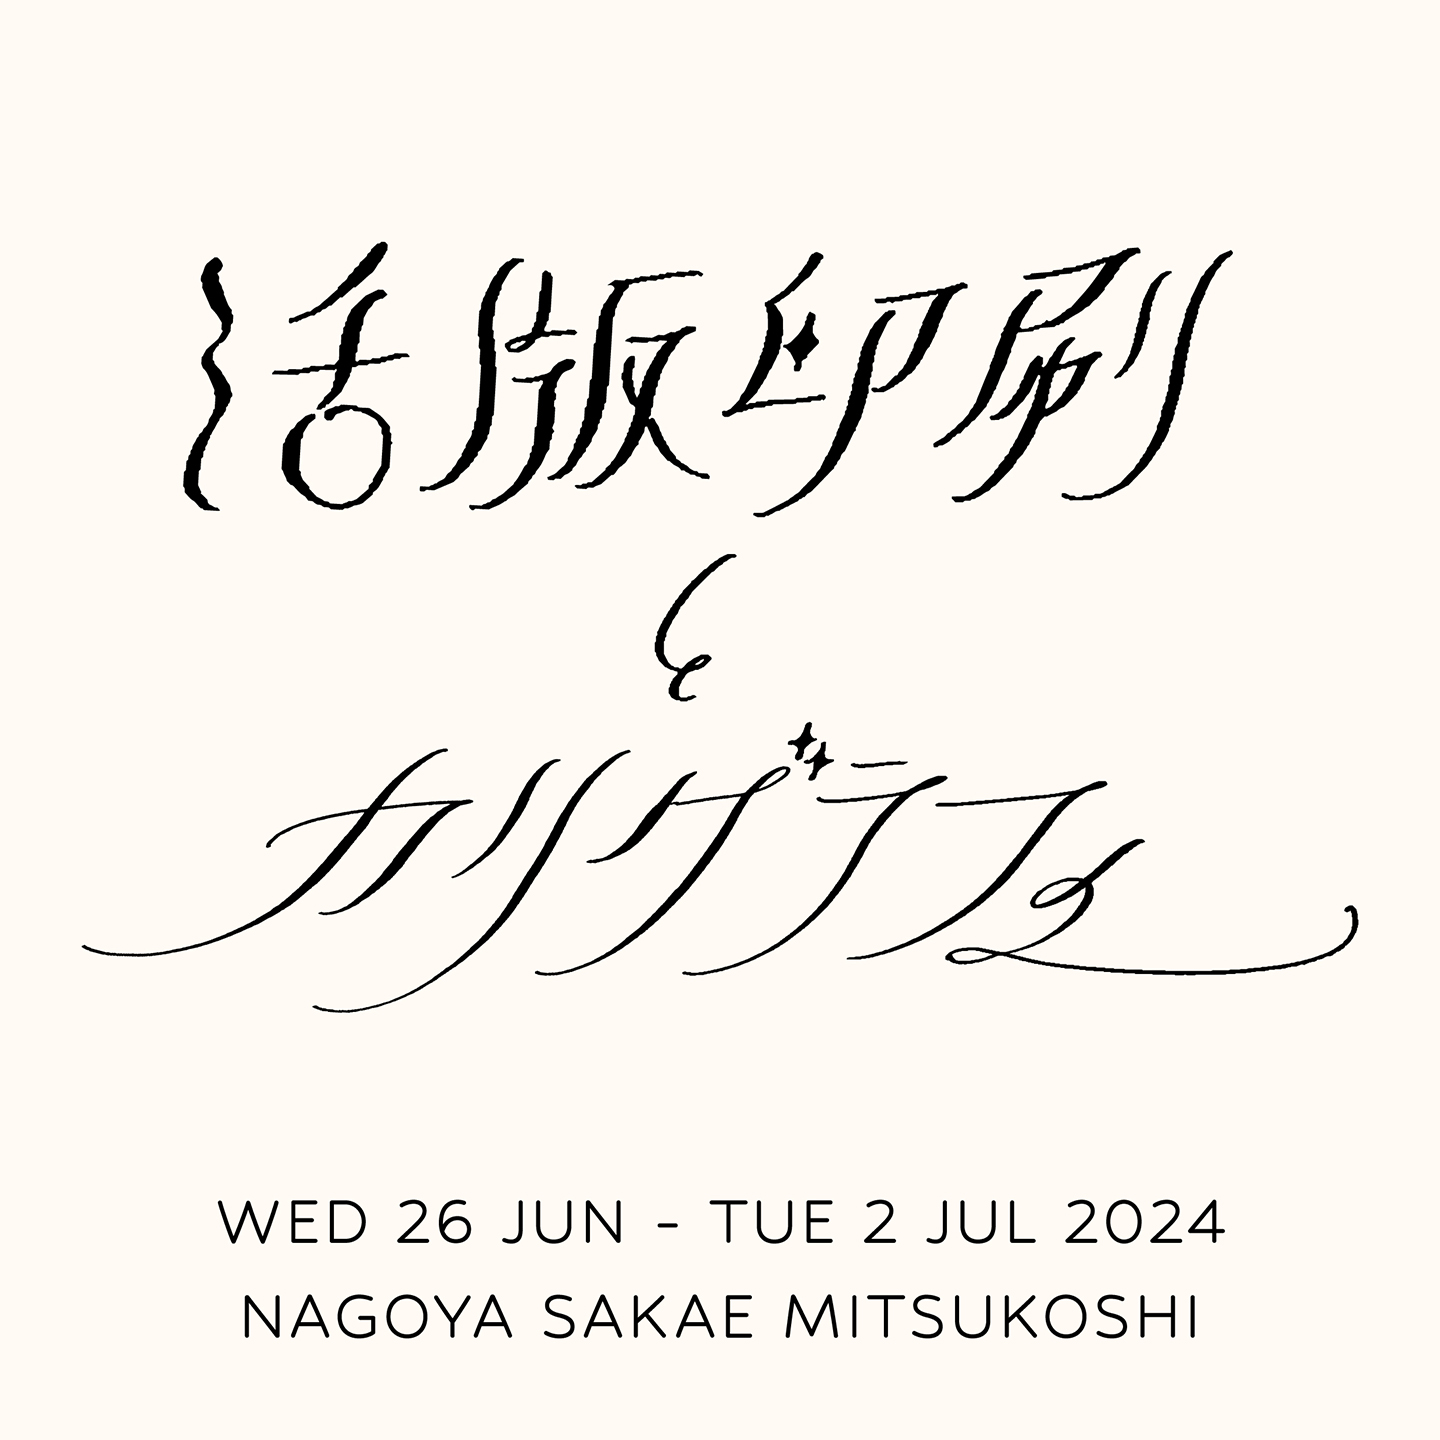 名古屋栄三越で開催するイベント「活版印刷とカリグラフィー」